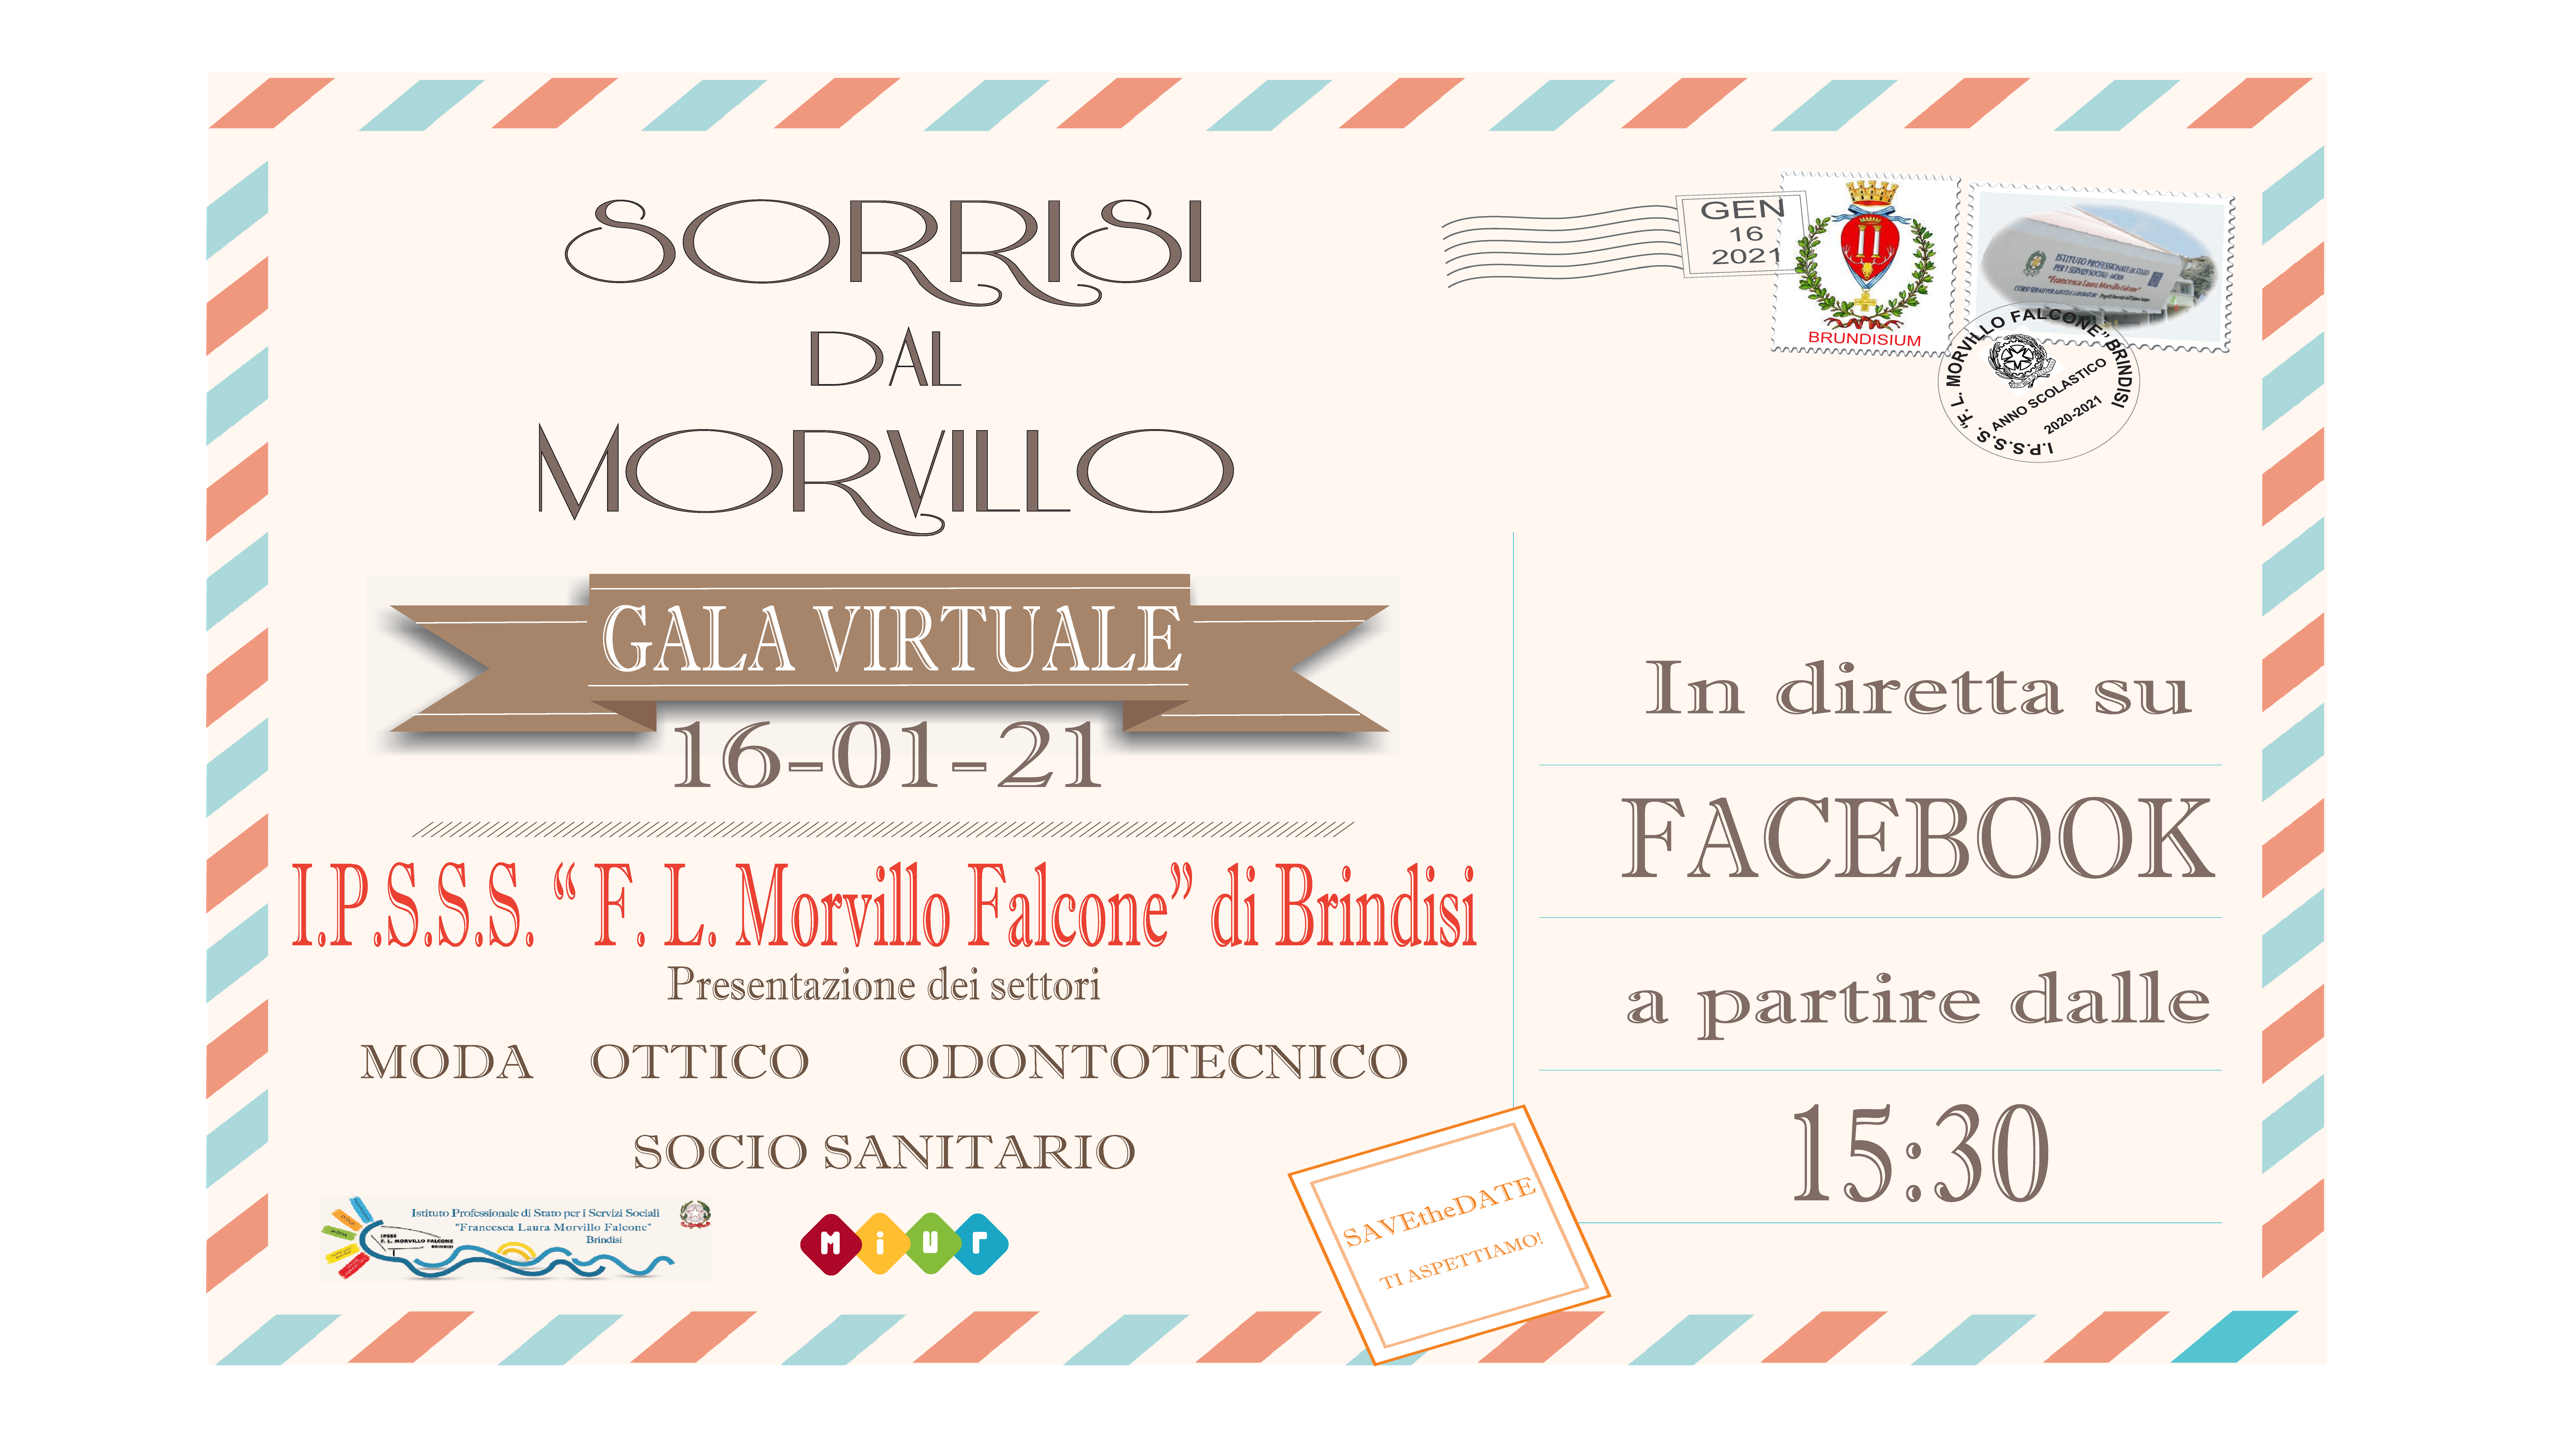 Gala Virtuale IPSSS "F. L. Morvillo Falcone" di Brindisi